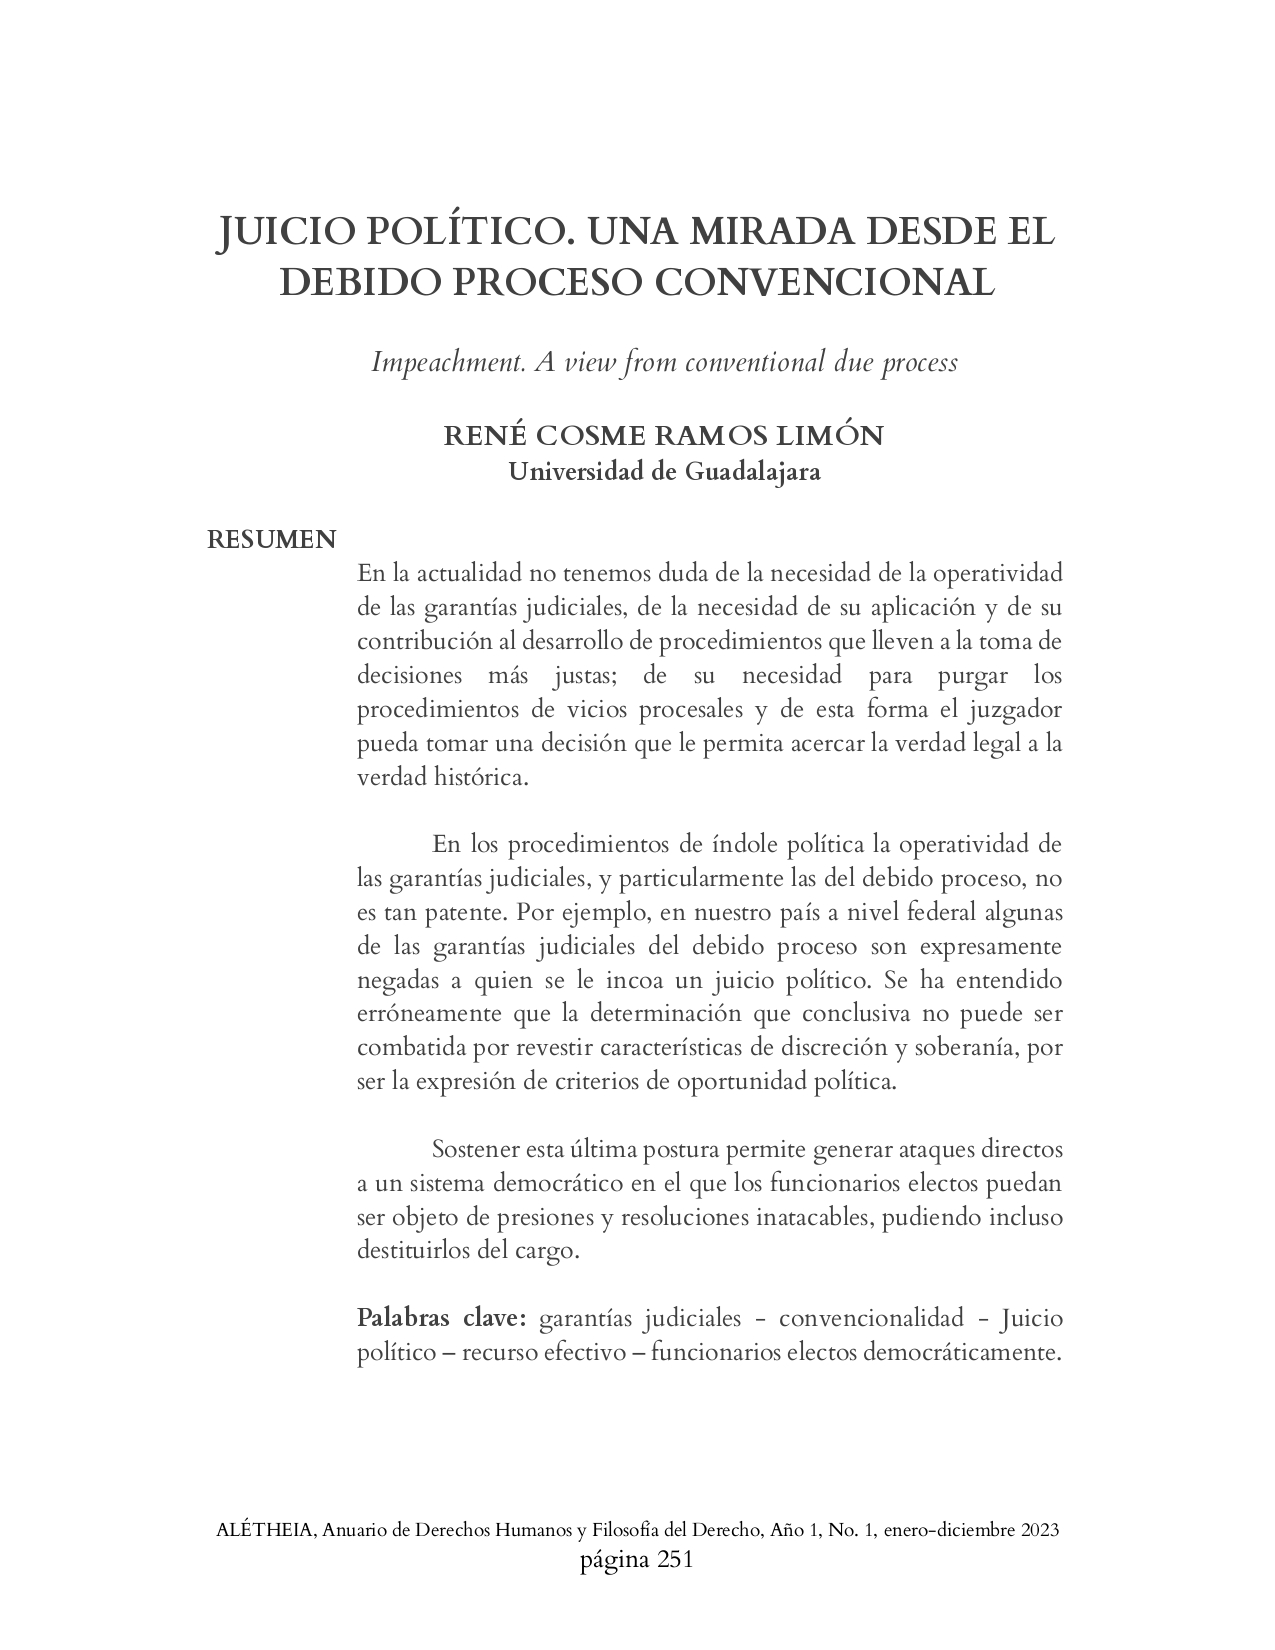 JUICIO POLÍTICO. UNA MIRADA DESDE EL DEBIDO PROCESO CONVENCIONAL